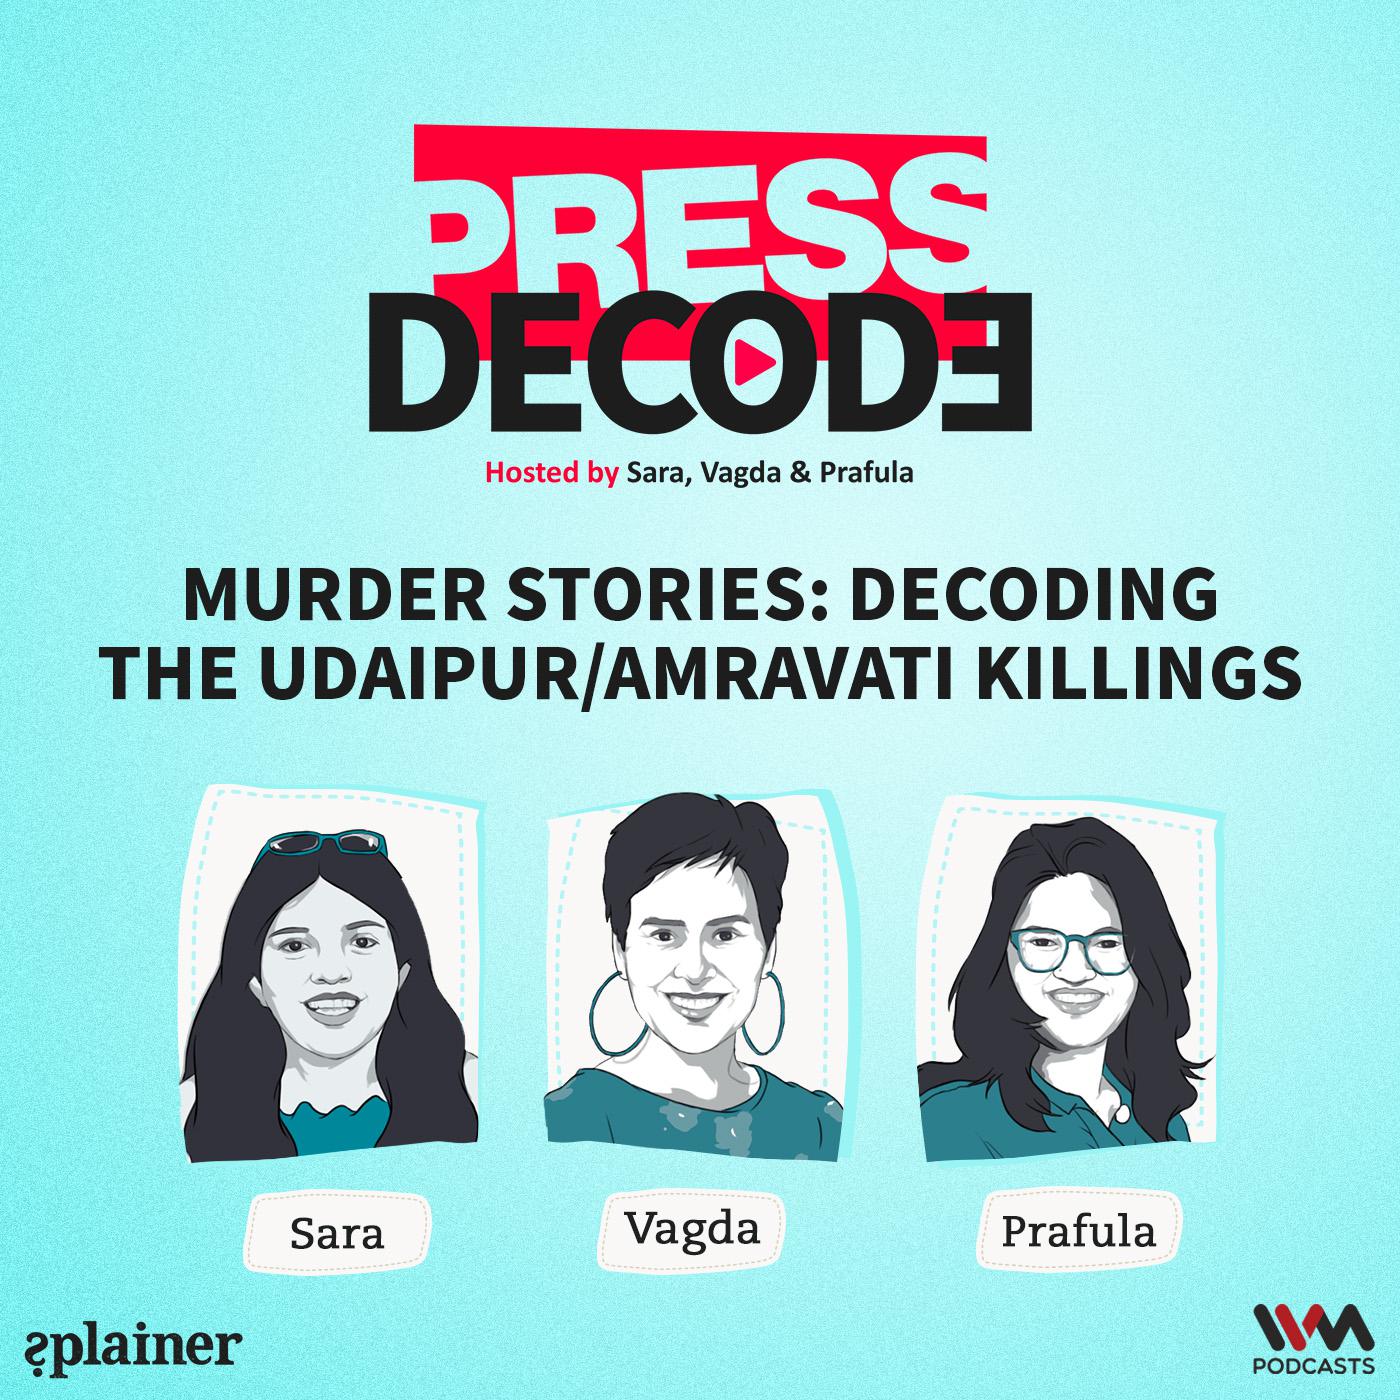 Murder stories: Decoding the Udaipur/Amravati Killings